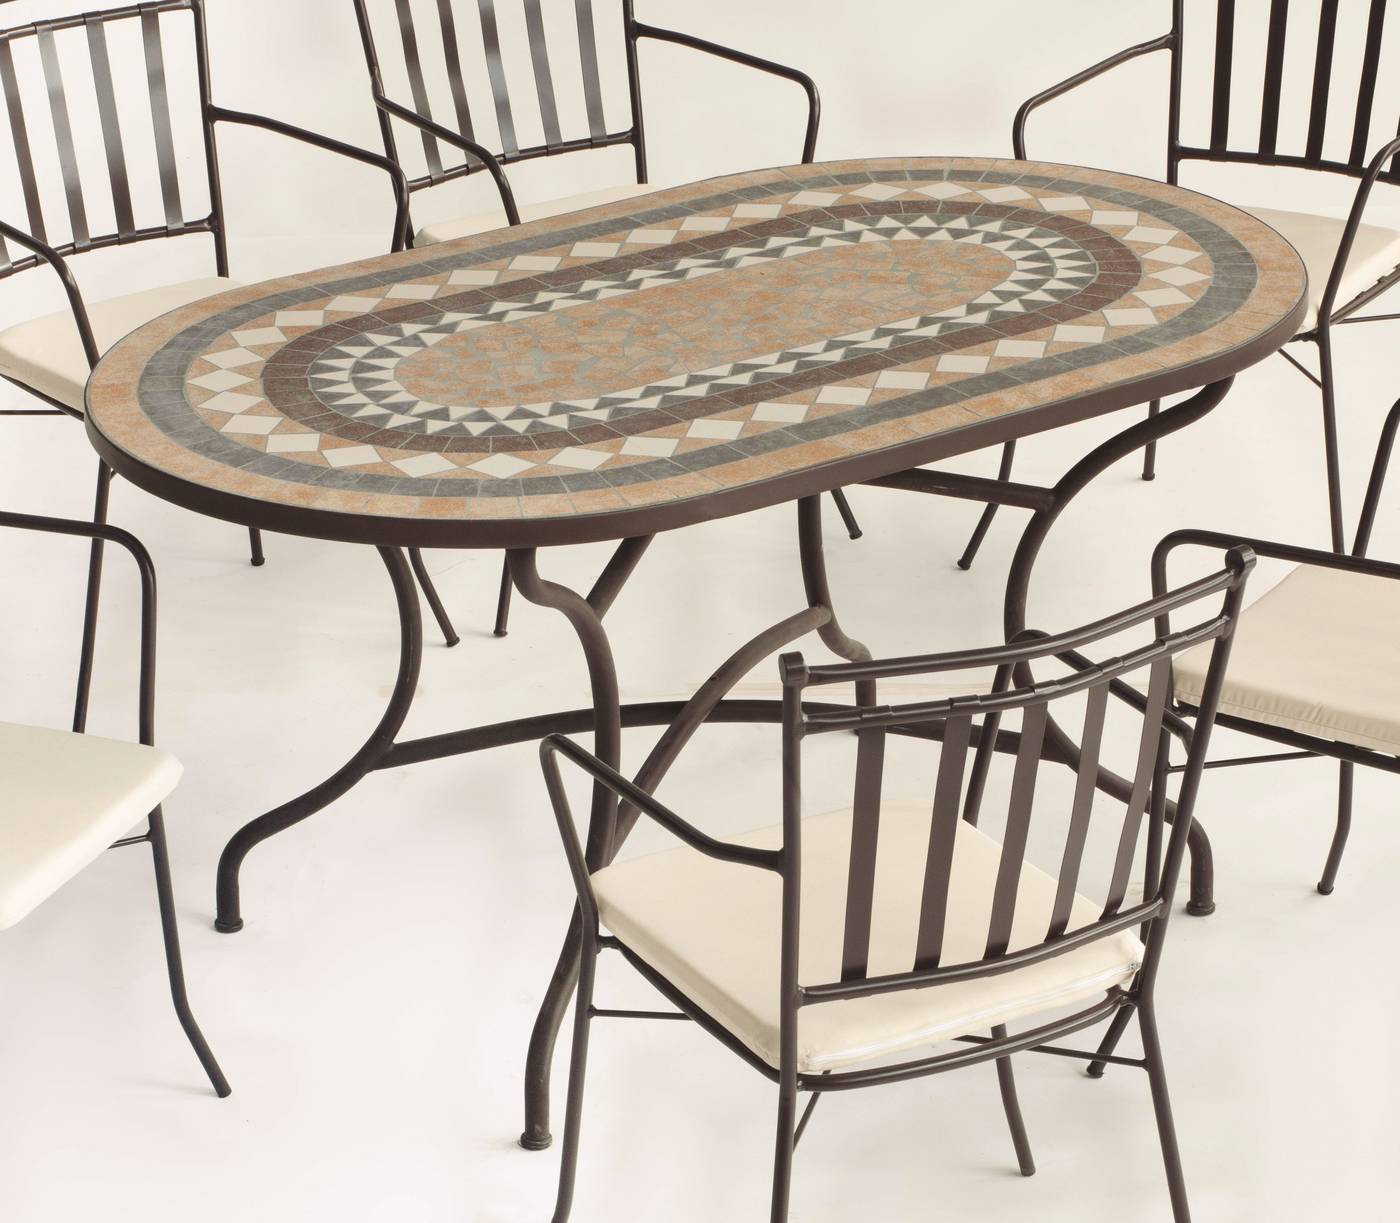 Conjunto Mosaico Laredo-Shifa - Conjunto de forja color bronce: mesa con tablero ovalado mosaico de 150 cm + 4 sillones con cojines.<br/><br/><b>OFERTA VÁLIDA HASTA EL 31 DE MAYO O FIN DE EXISTENCIAS</b>.